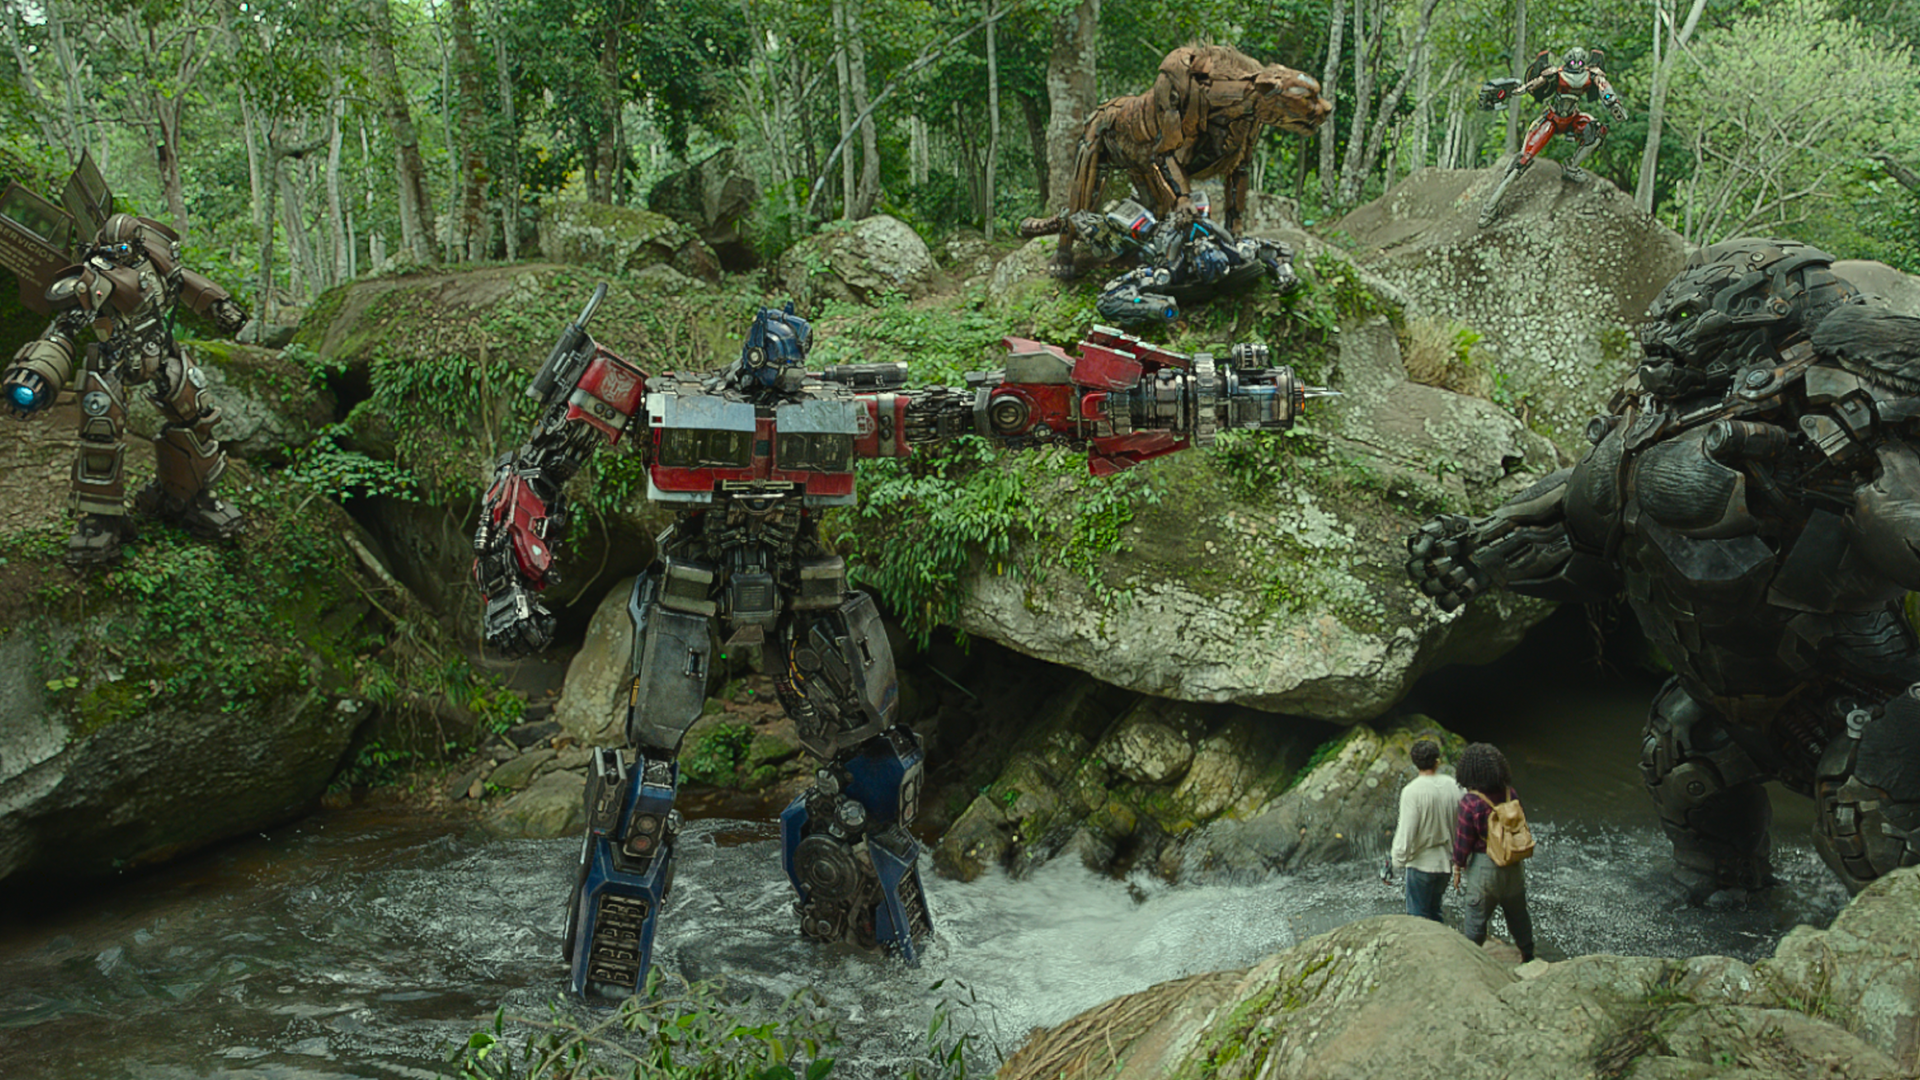 Transformers: O despertar das feras' tem boas novidades, mas